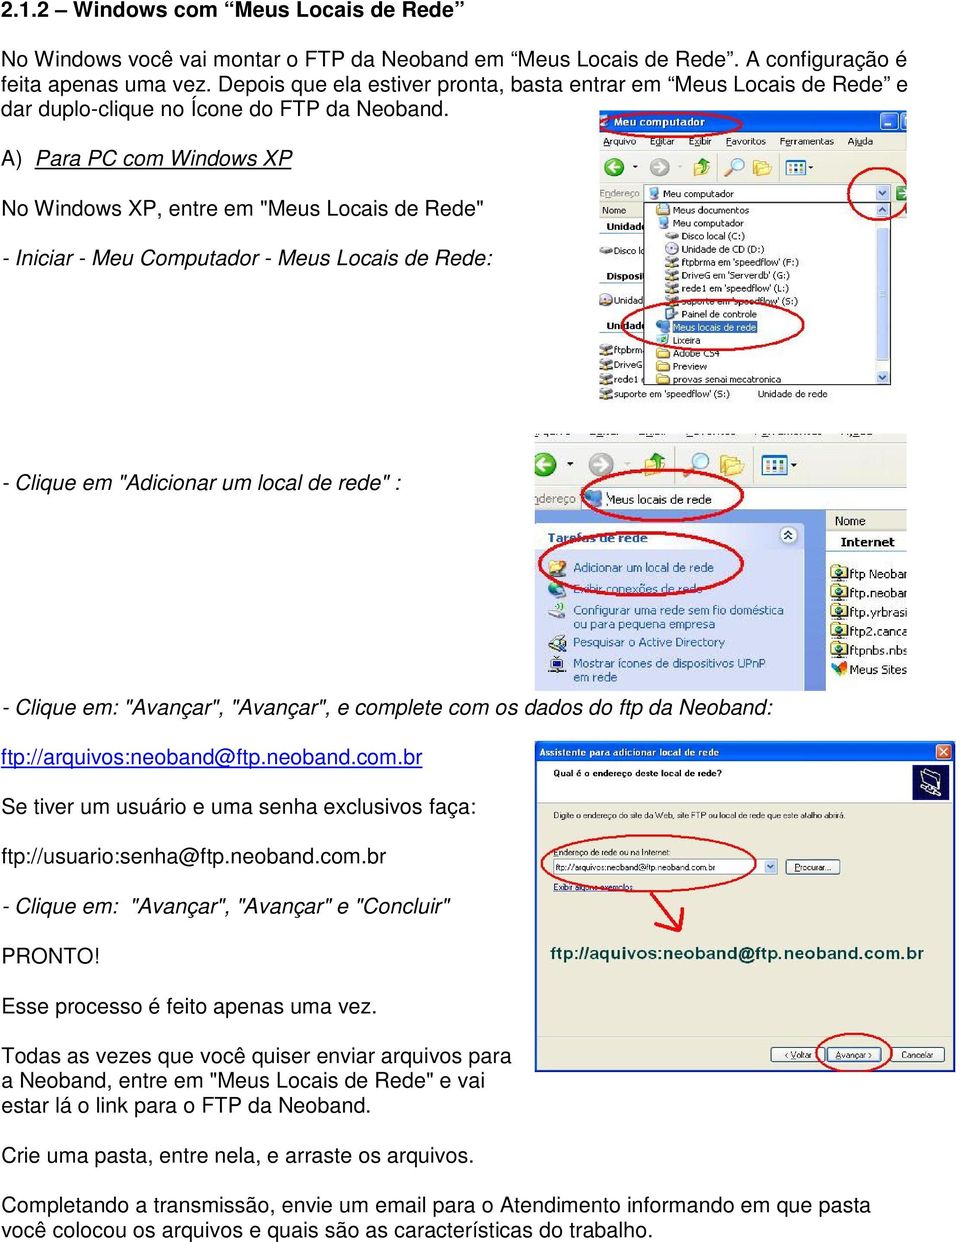 A) Para PC com Windows XP No Windows XP, entre em "Meus Locais de Rede" - Iniciar - Meu Computador - Meus Locais de Rede: - Clique em "Adicionar um local de rede" : - Clique em: "Avançar", "Avançar",